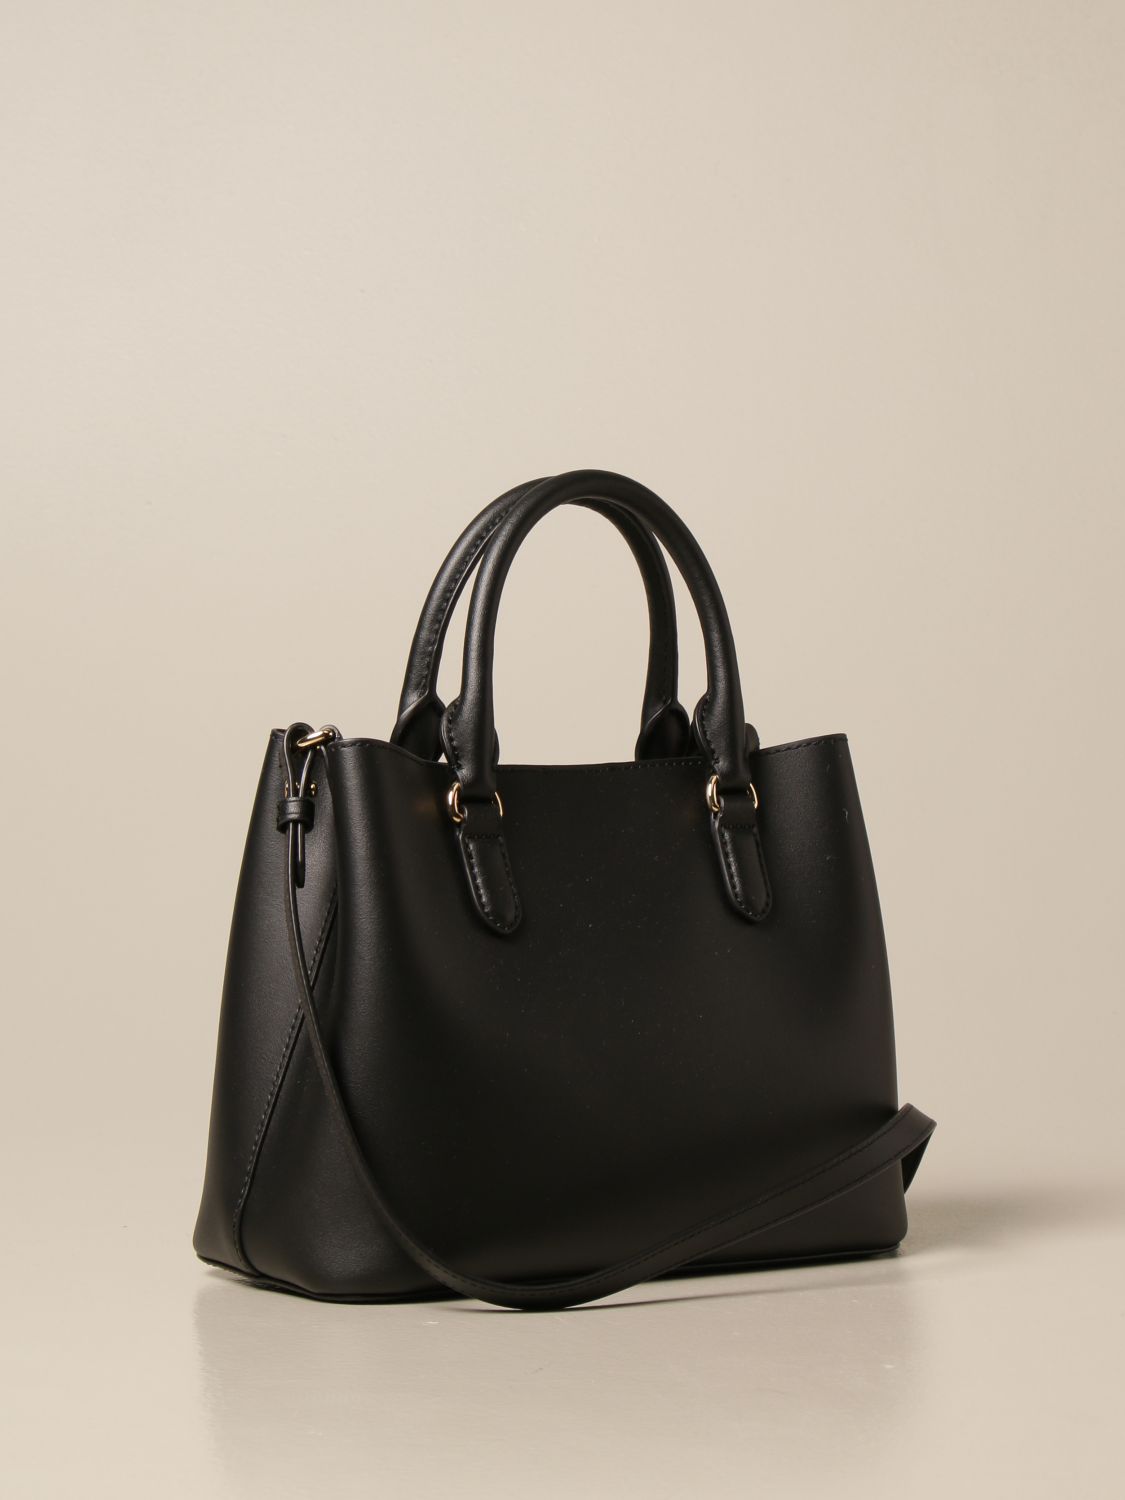 Leather handbag Lauren Ralph Lauren Black in Leather - 34382486